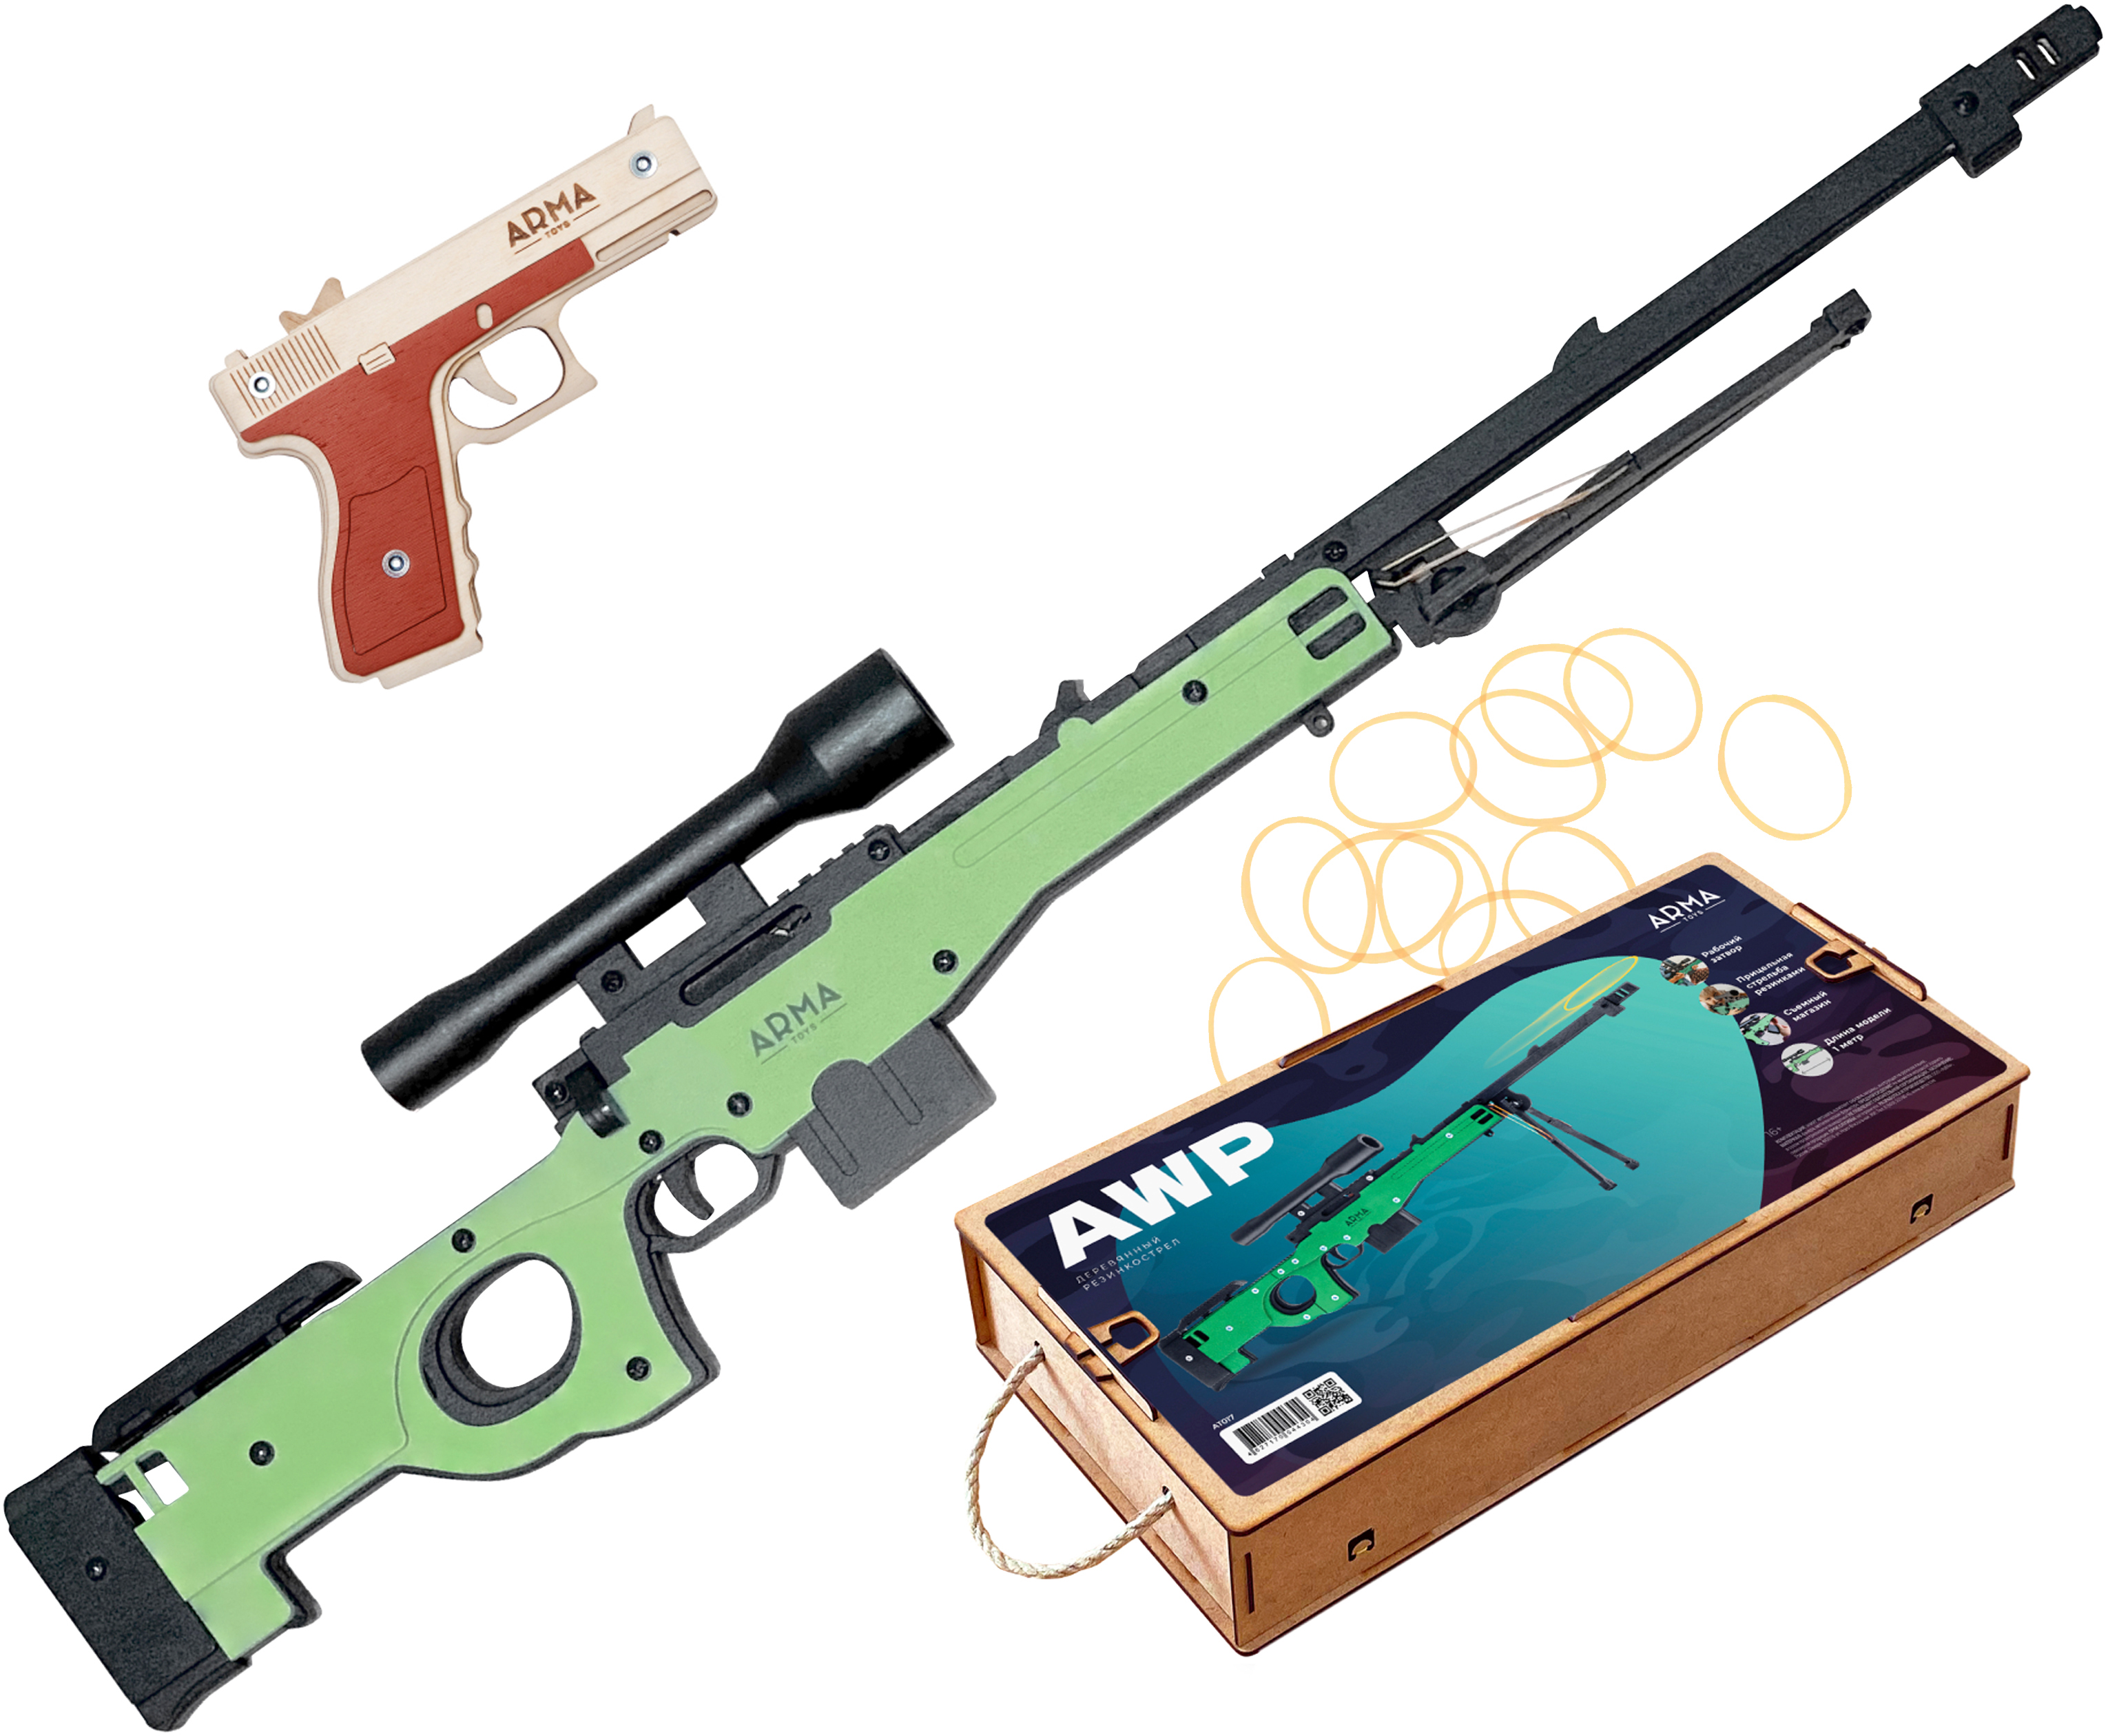 Набор игрушечных резинкострелов Arma toys Спецназ полиции винтовка AWP, пистолет Глок набор резинкострелов arma toys партизанский командир 2